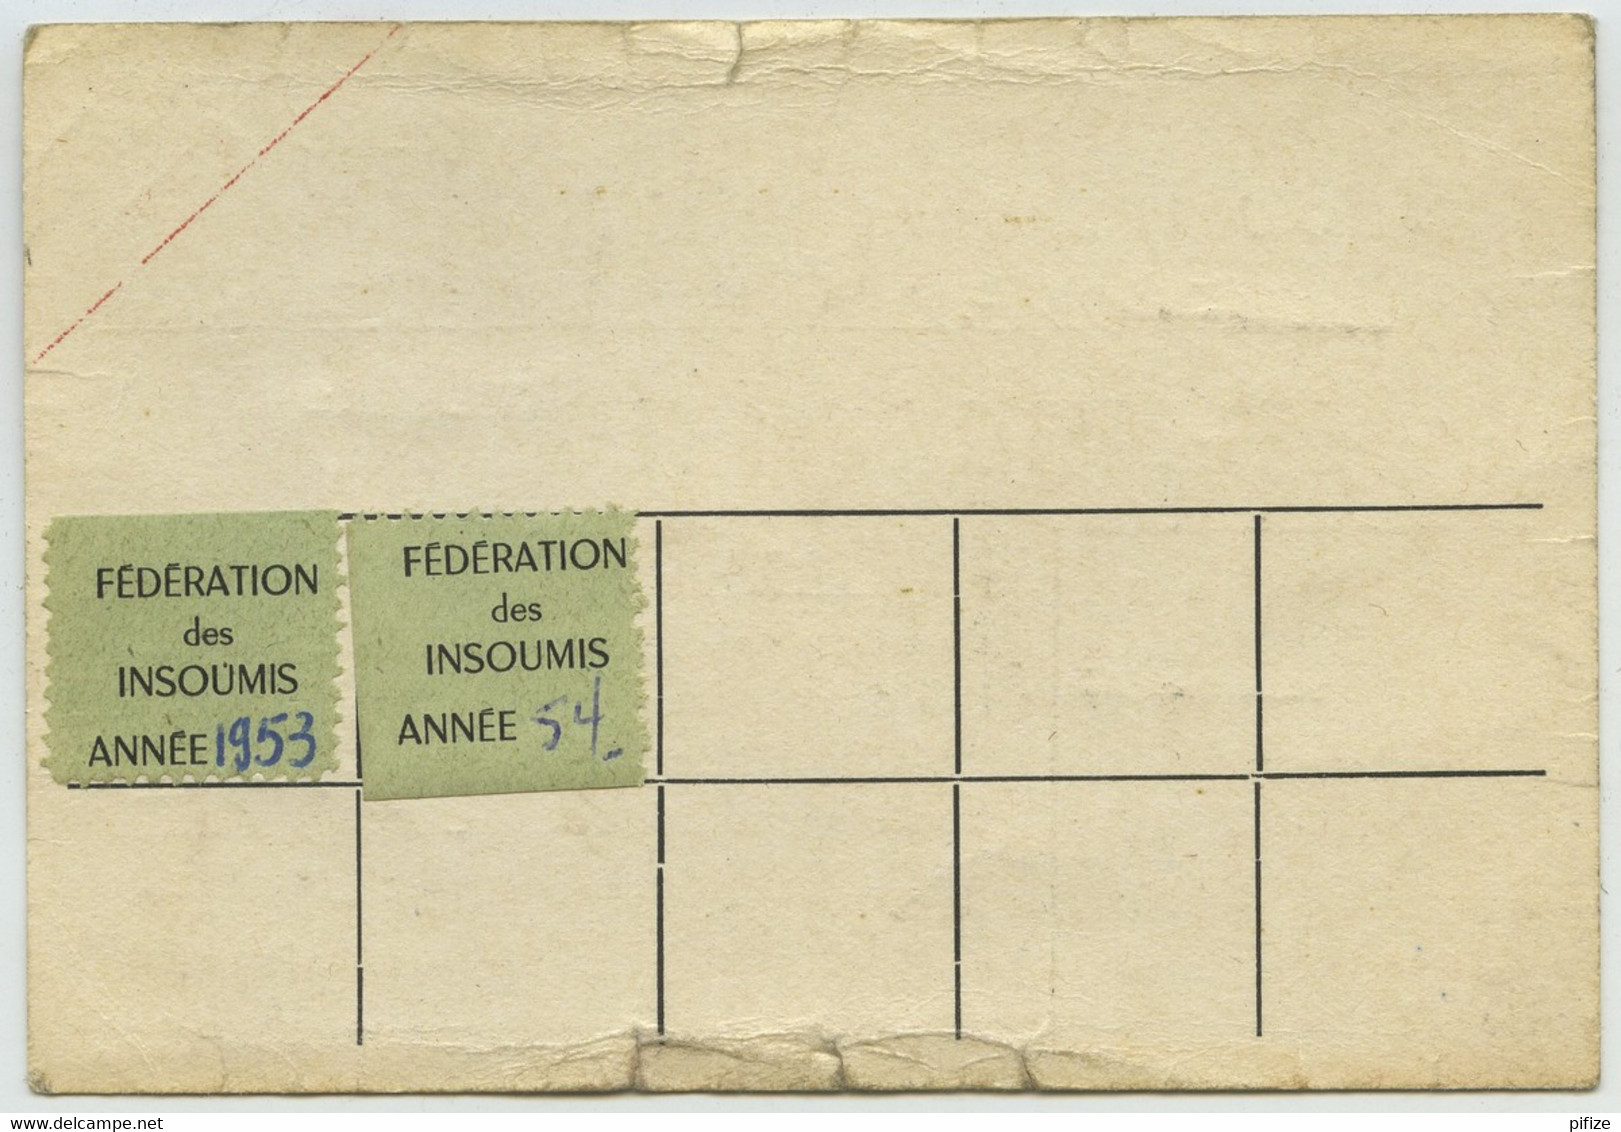 2 Cartes De La Fédération Des Insoumis. Caserne Féraudy, Metz, Moselle, 1948. Faulquemont + Cotisations 1953-54. - Documents Historiques